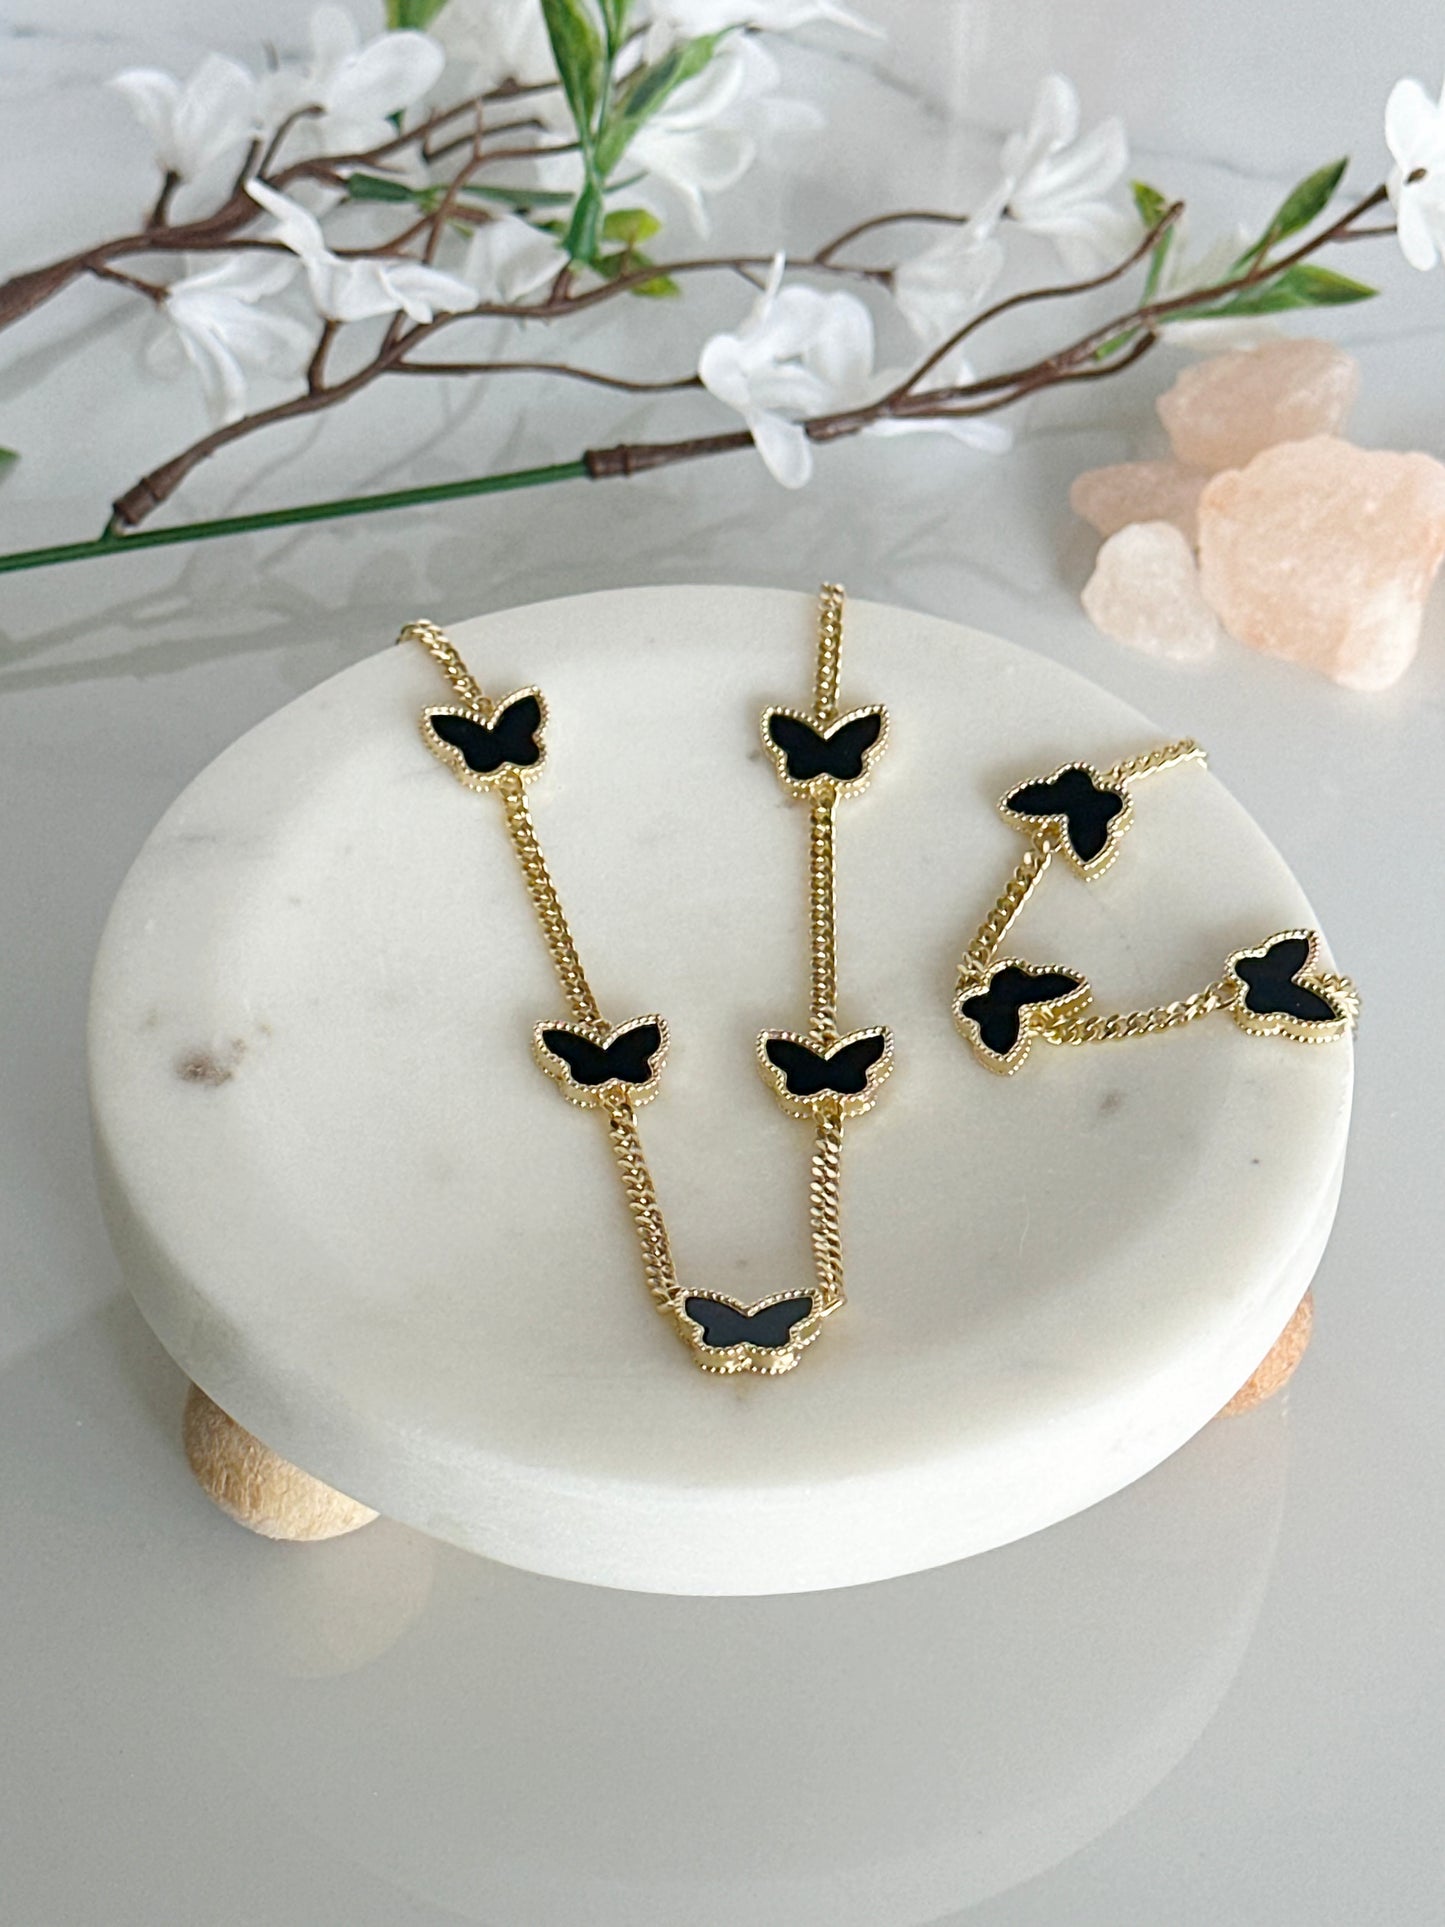 Butterfly Necklace and Bracelet Set - Adorn U